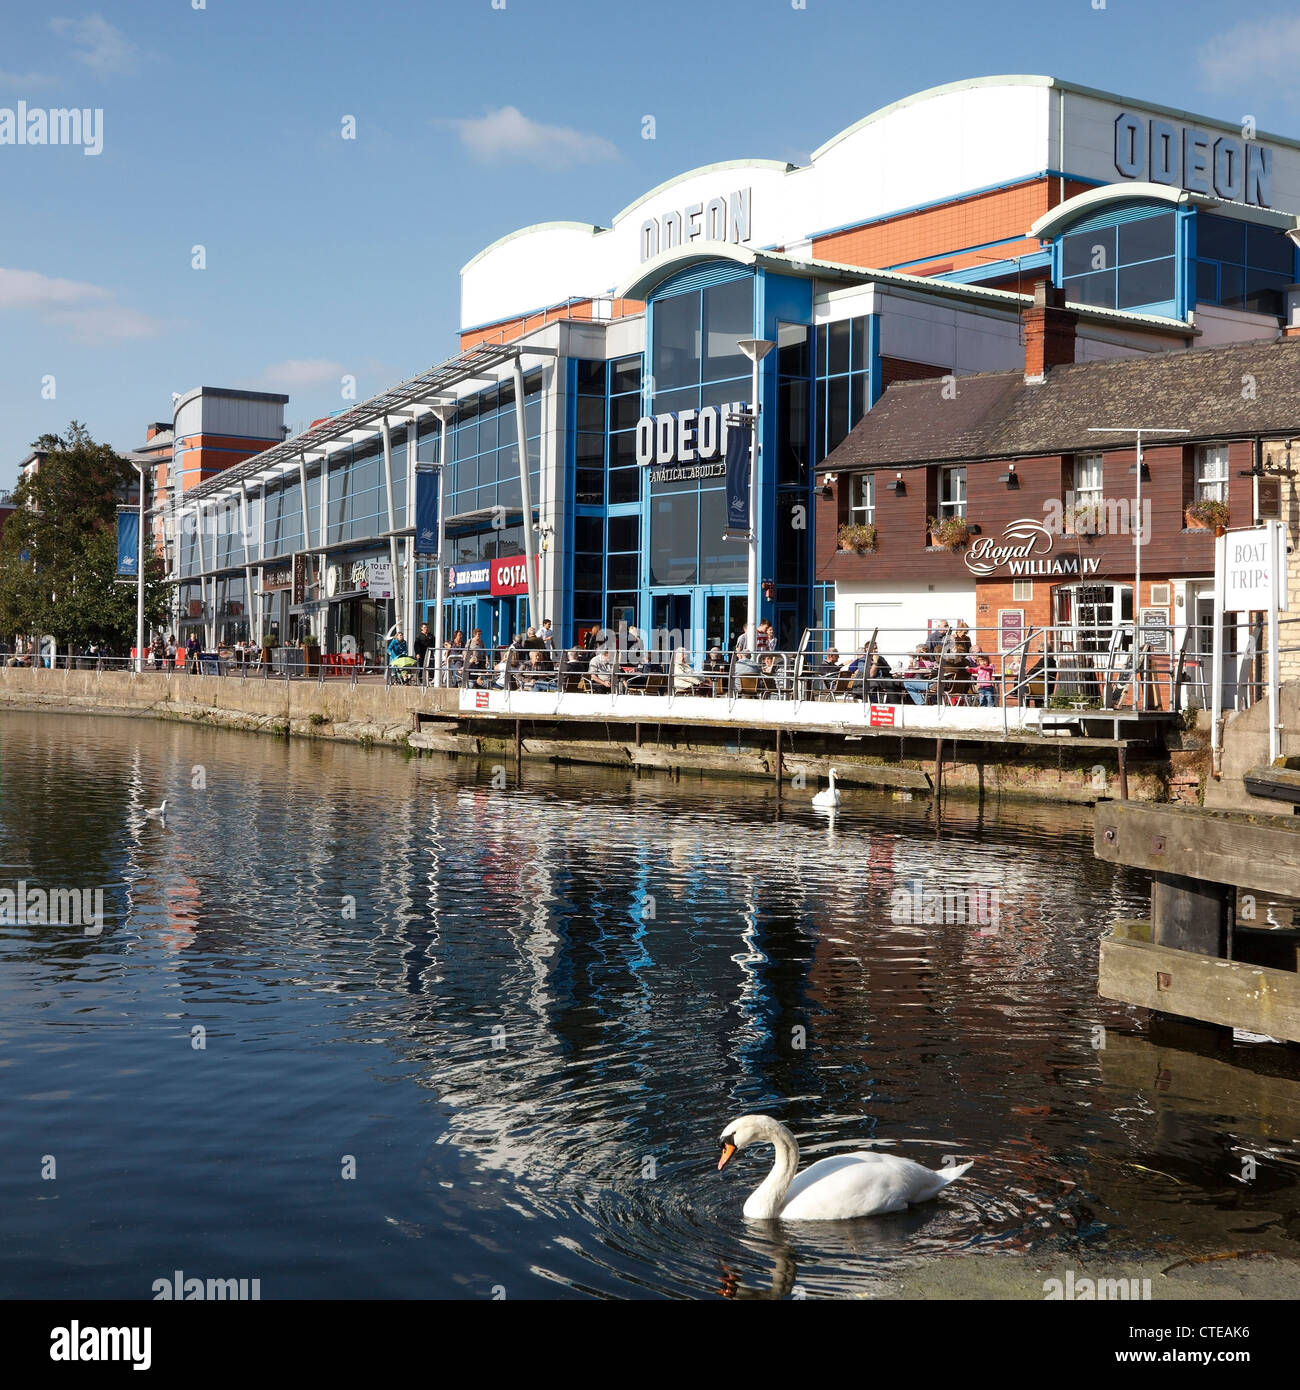 Swan, l'odéon cinéma multiplexe moderne, boutiques et bars sur rive nord de Brayford Waterfront, le centre-ville de Lincoln, Lincolnshire, Royaume-Uni Banque D'Images